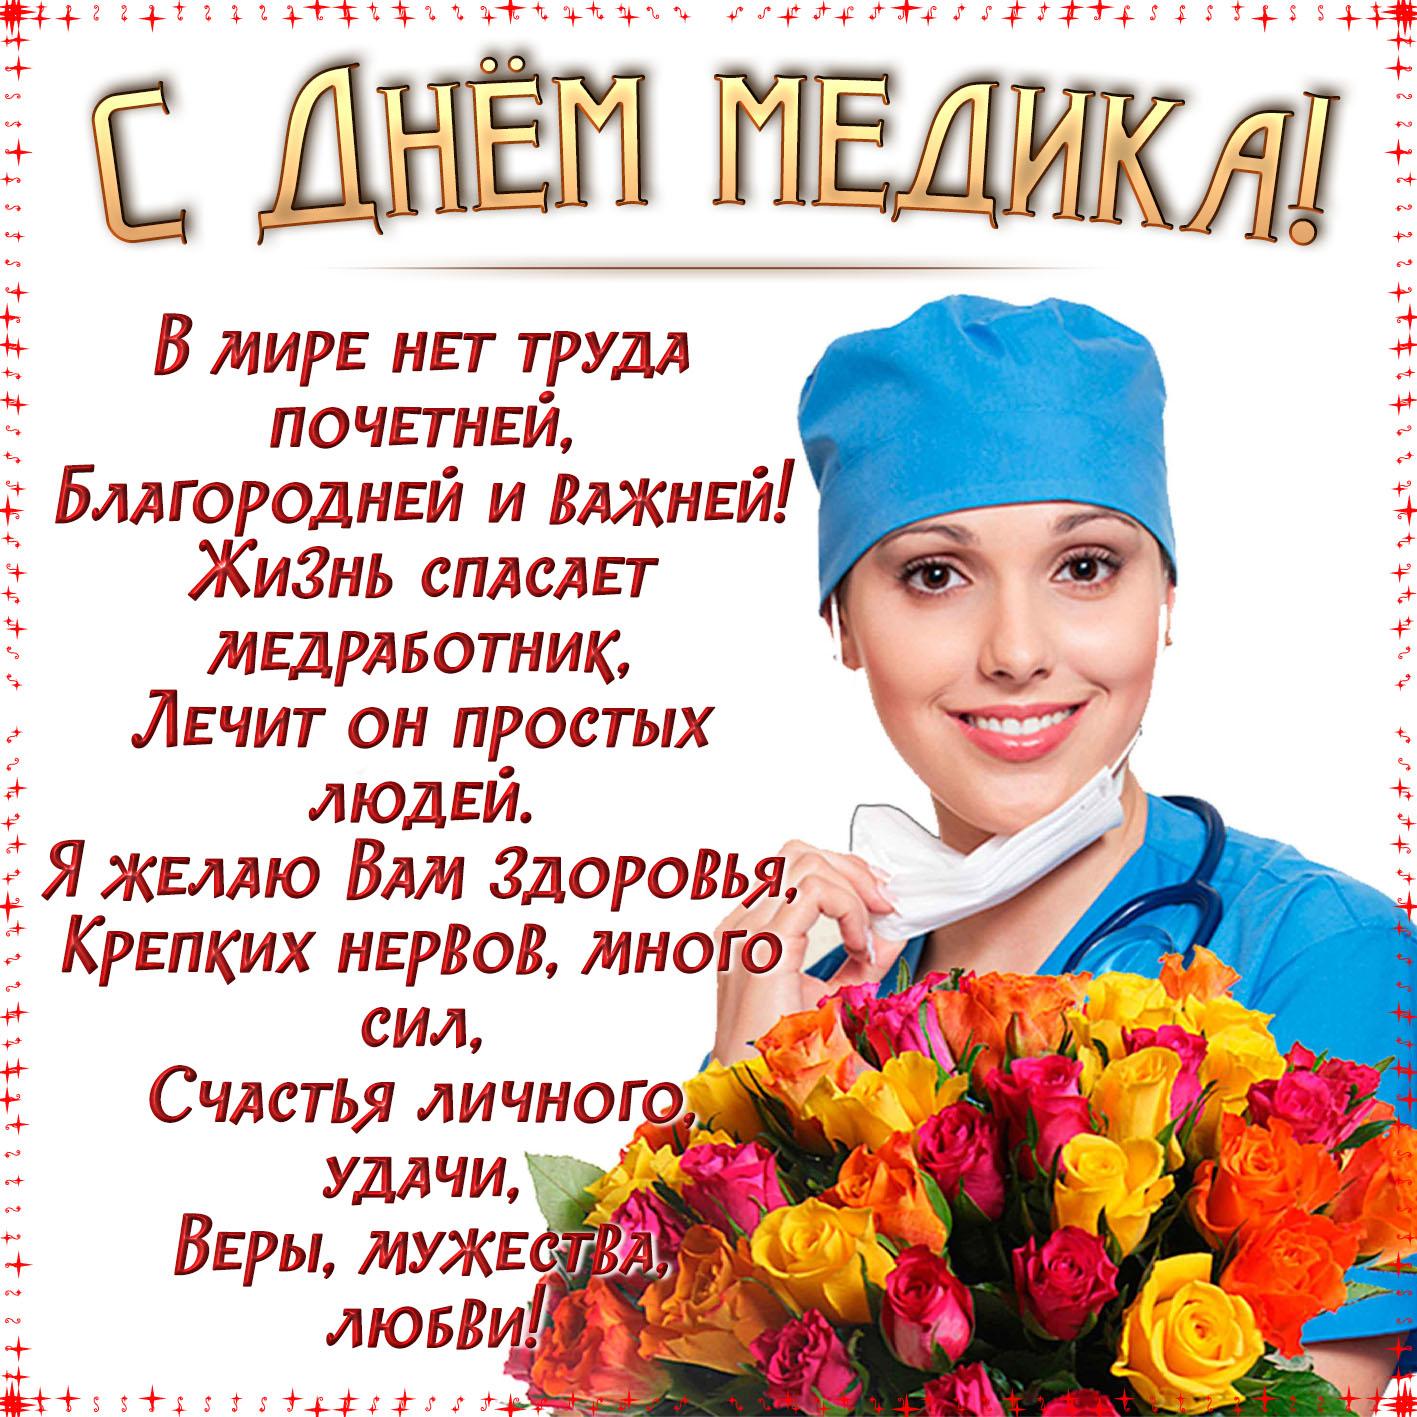 Открытки и картинки на День медицинского работника!